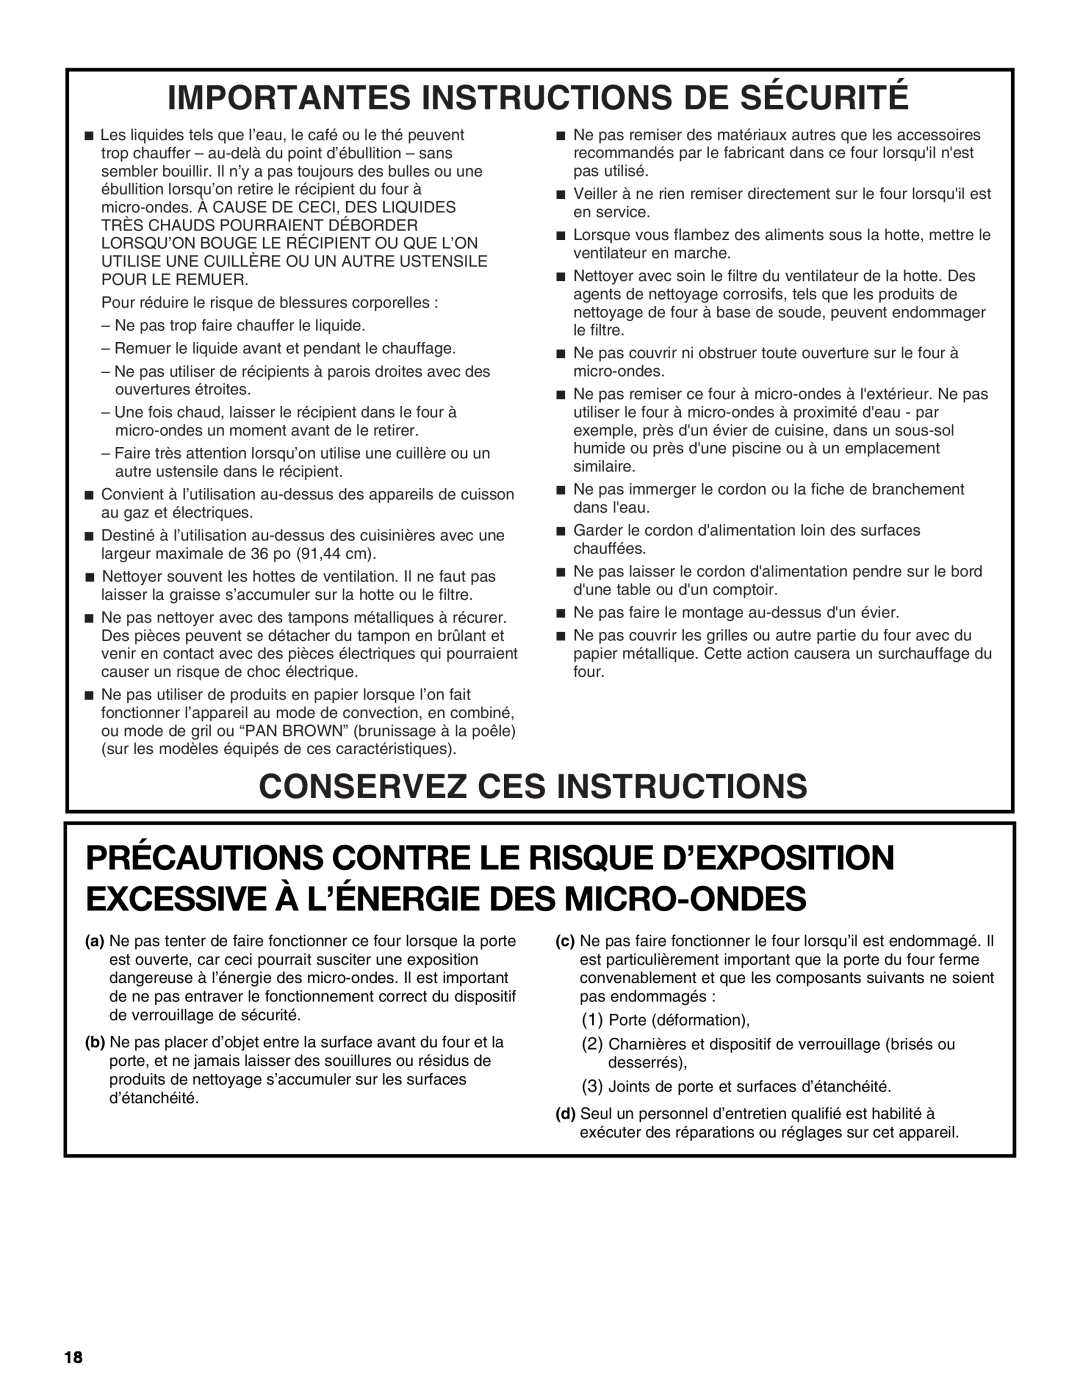 IKEA IMH16, IMH15 manual Importantes Instructions De Sécurité, Conservez Ces Instructions, 1Porte déformation 